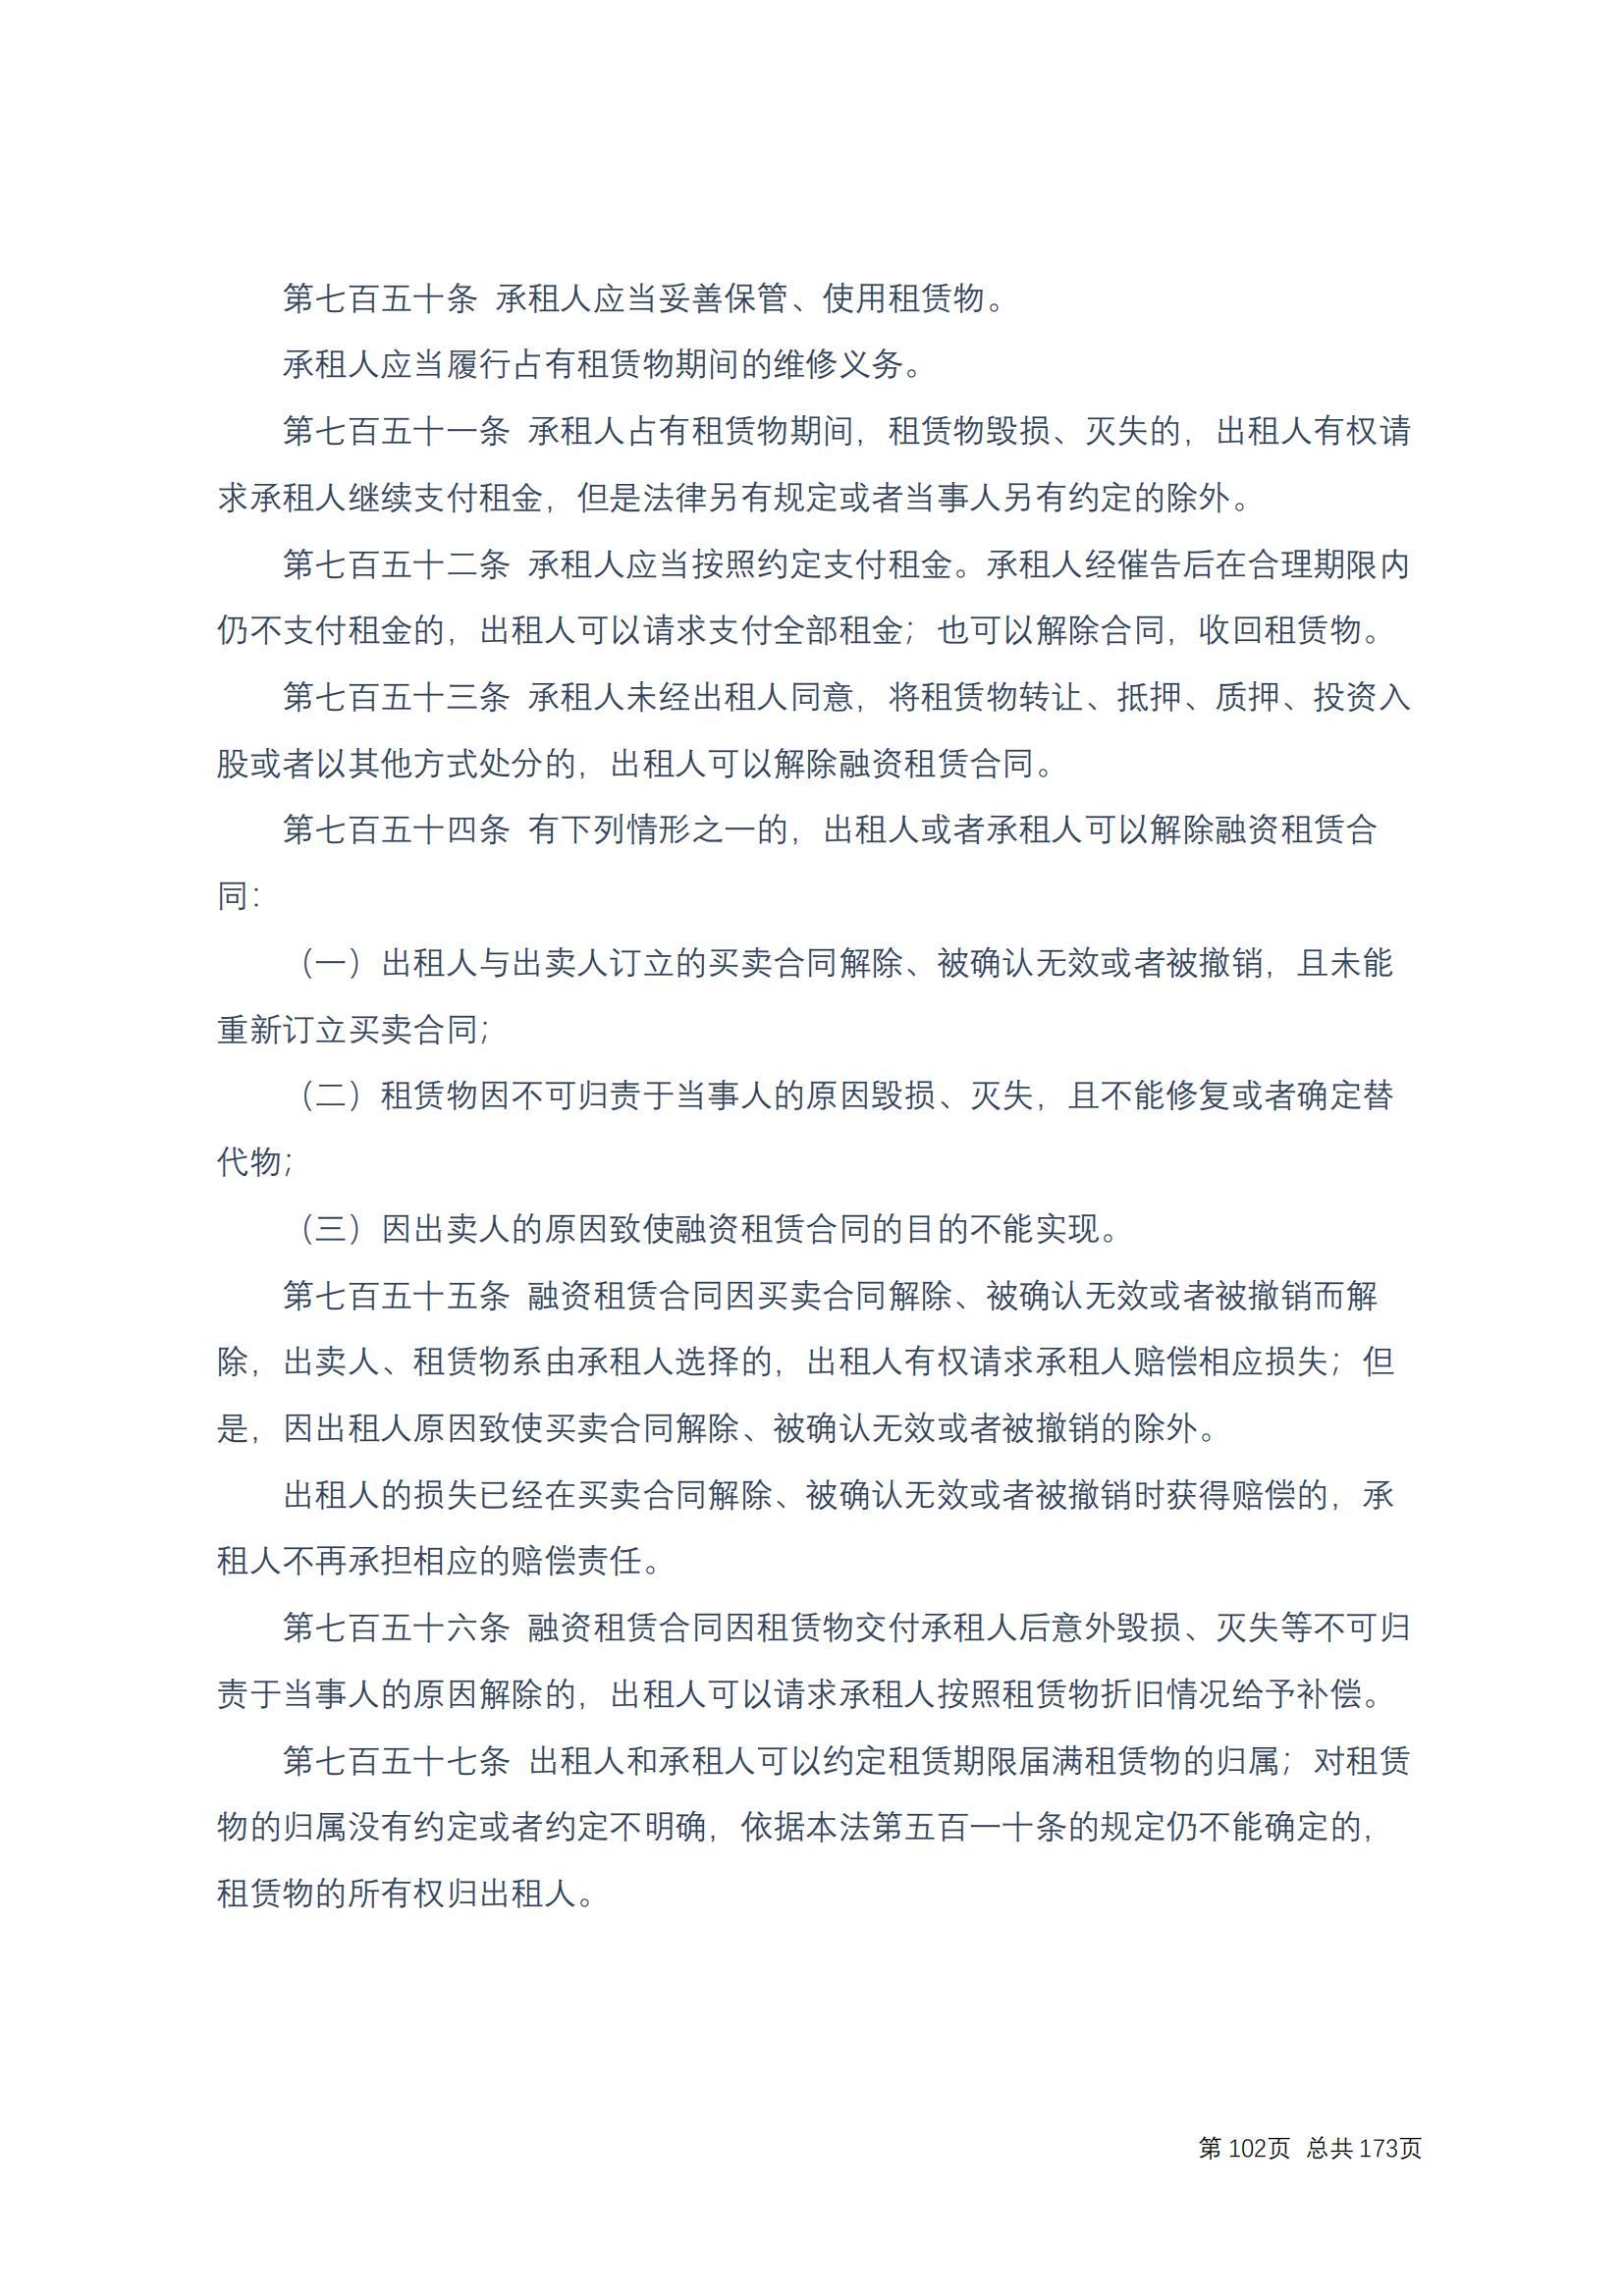 中华人民共和国民法典 修改过_101